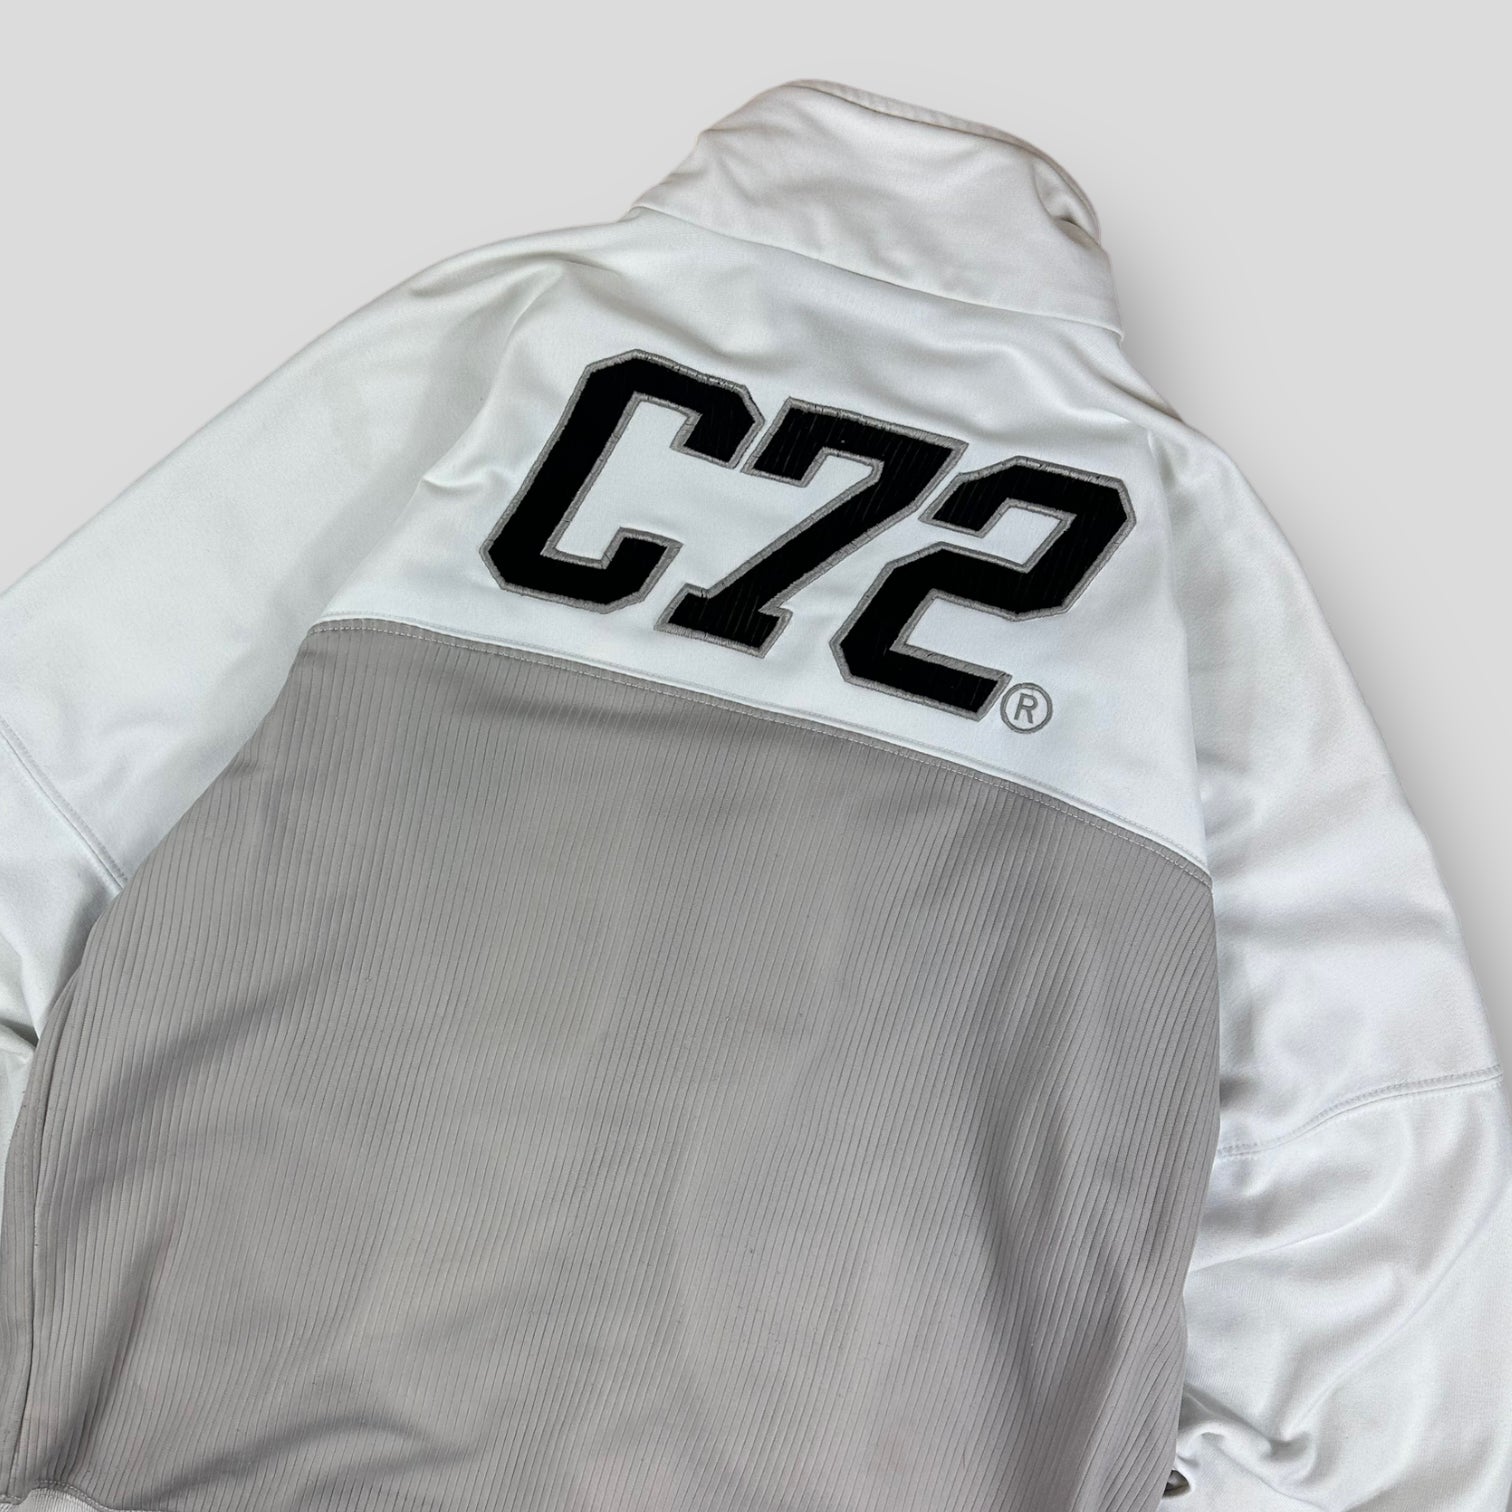 Nike Cortez jacket